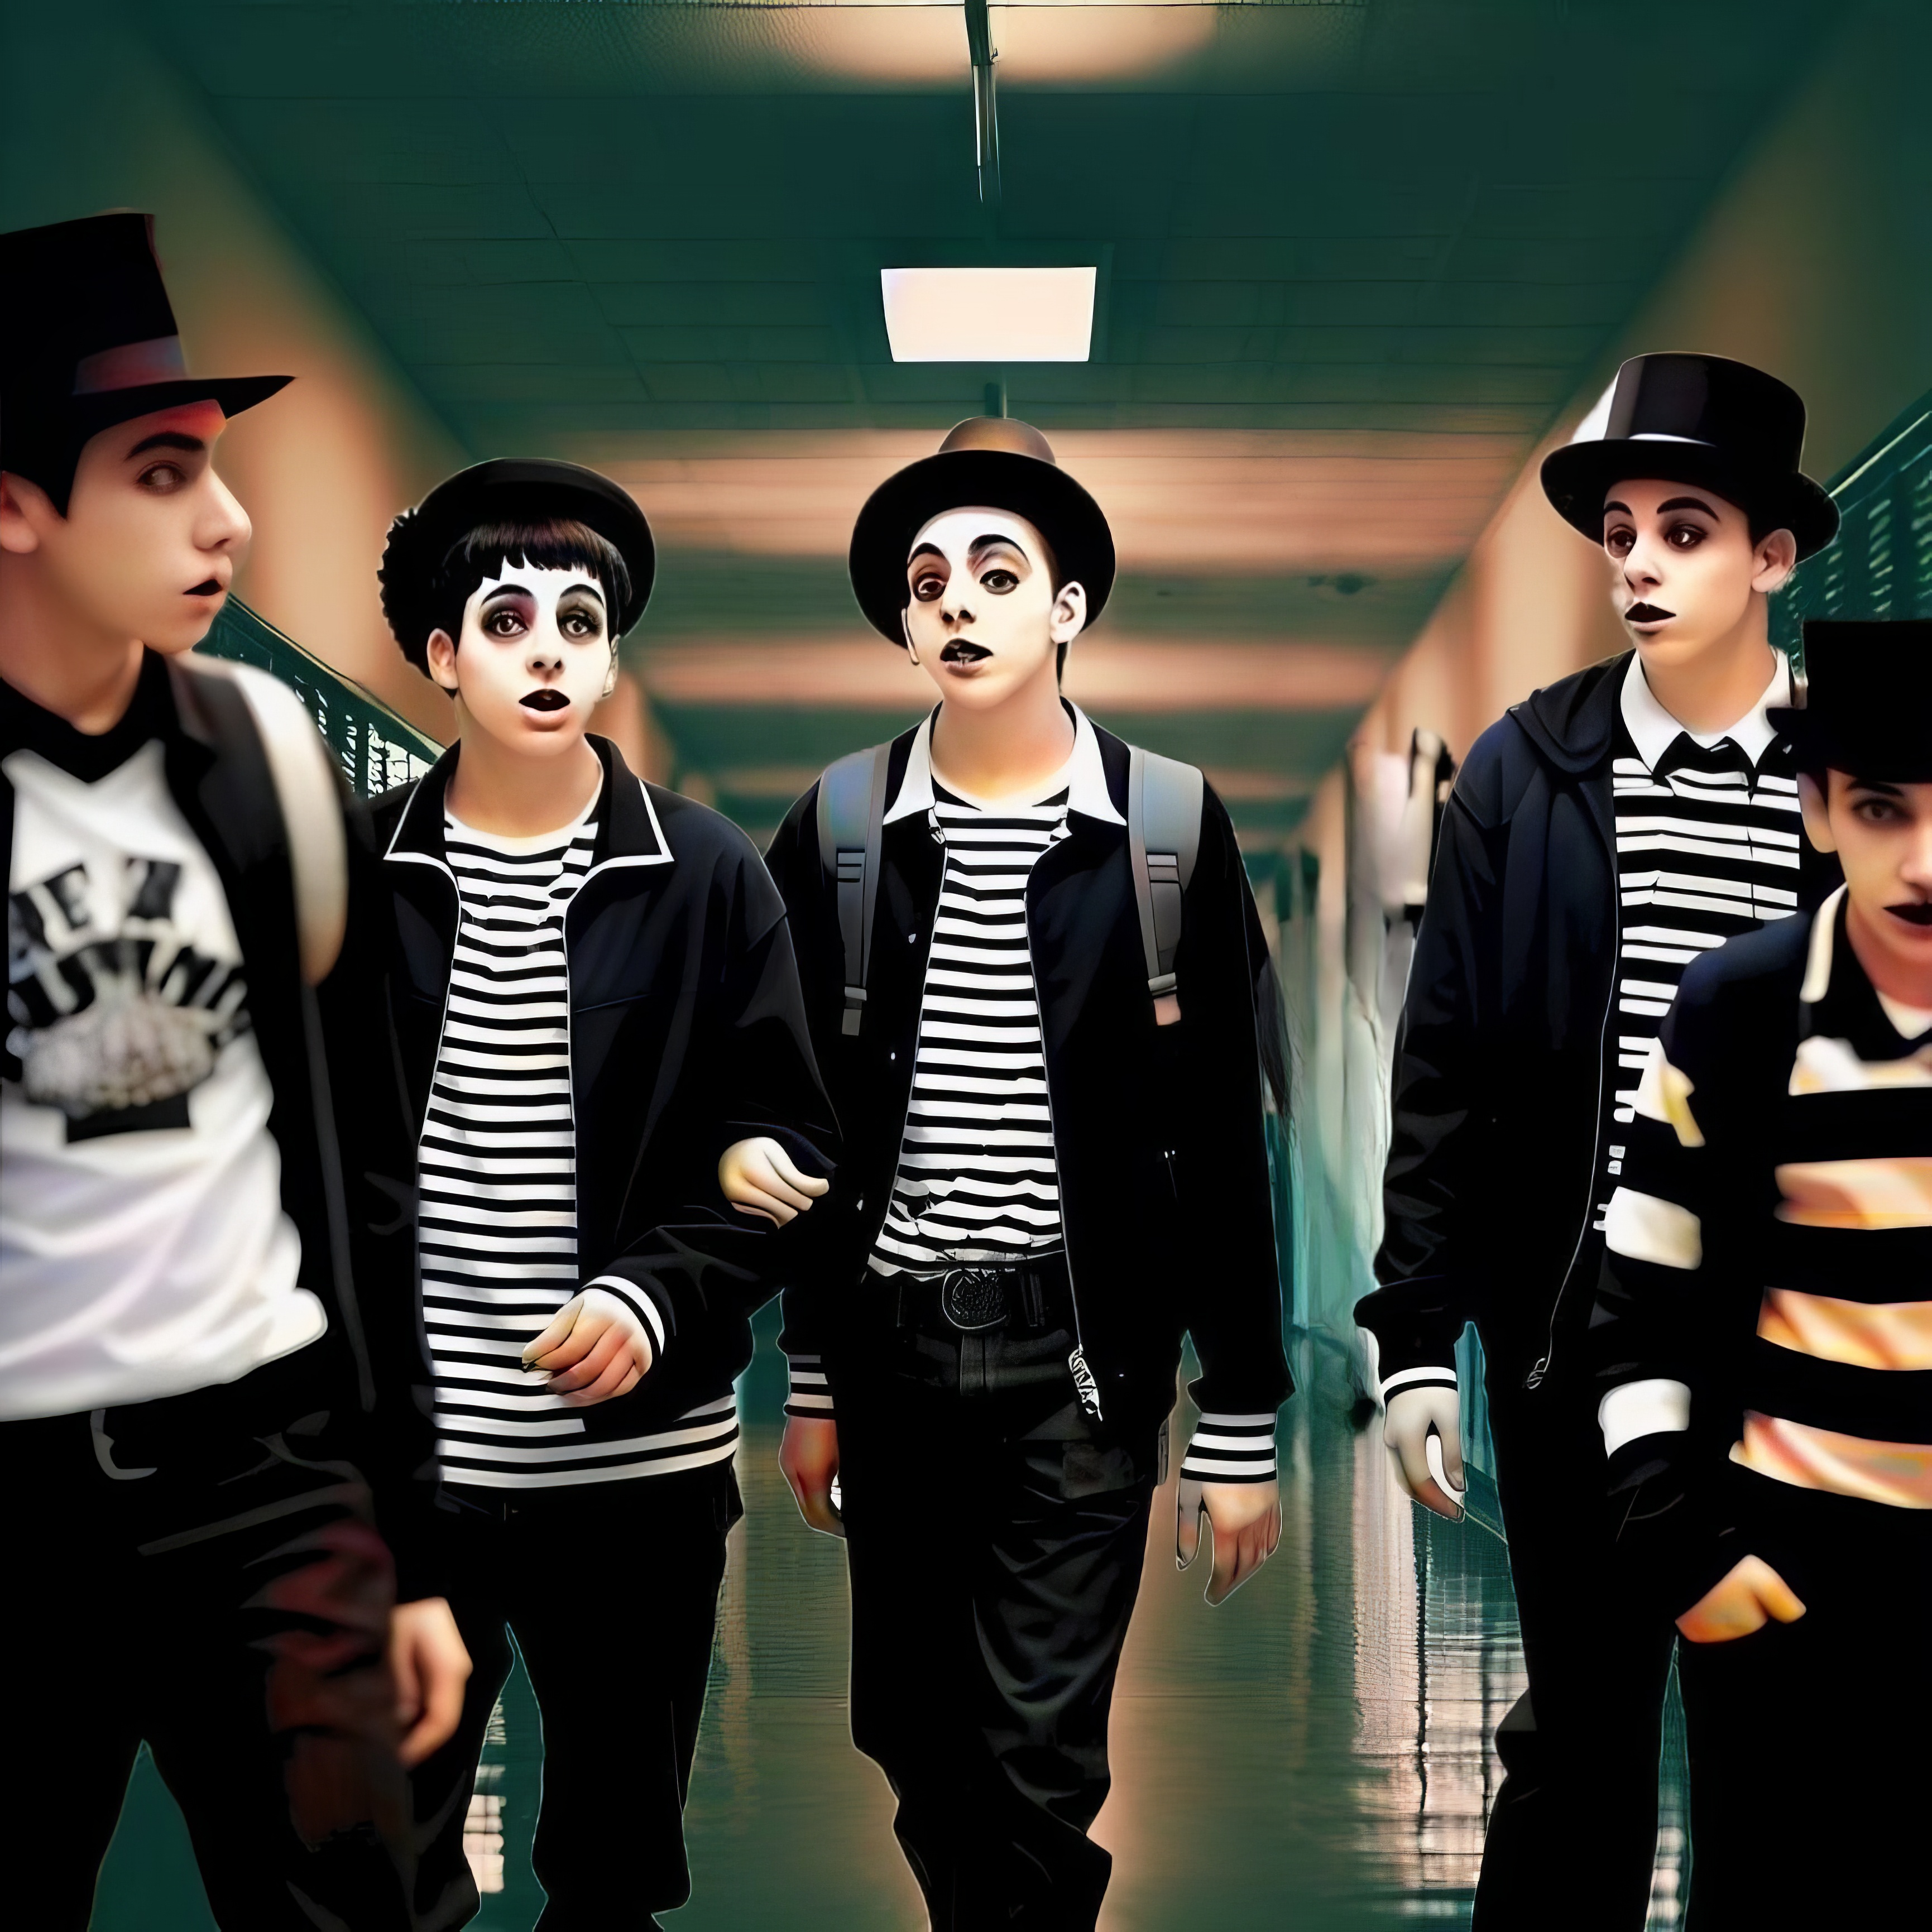 High school boys is a high school hallway dressed as mimes.